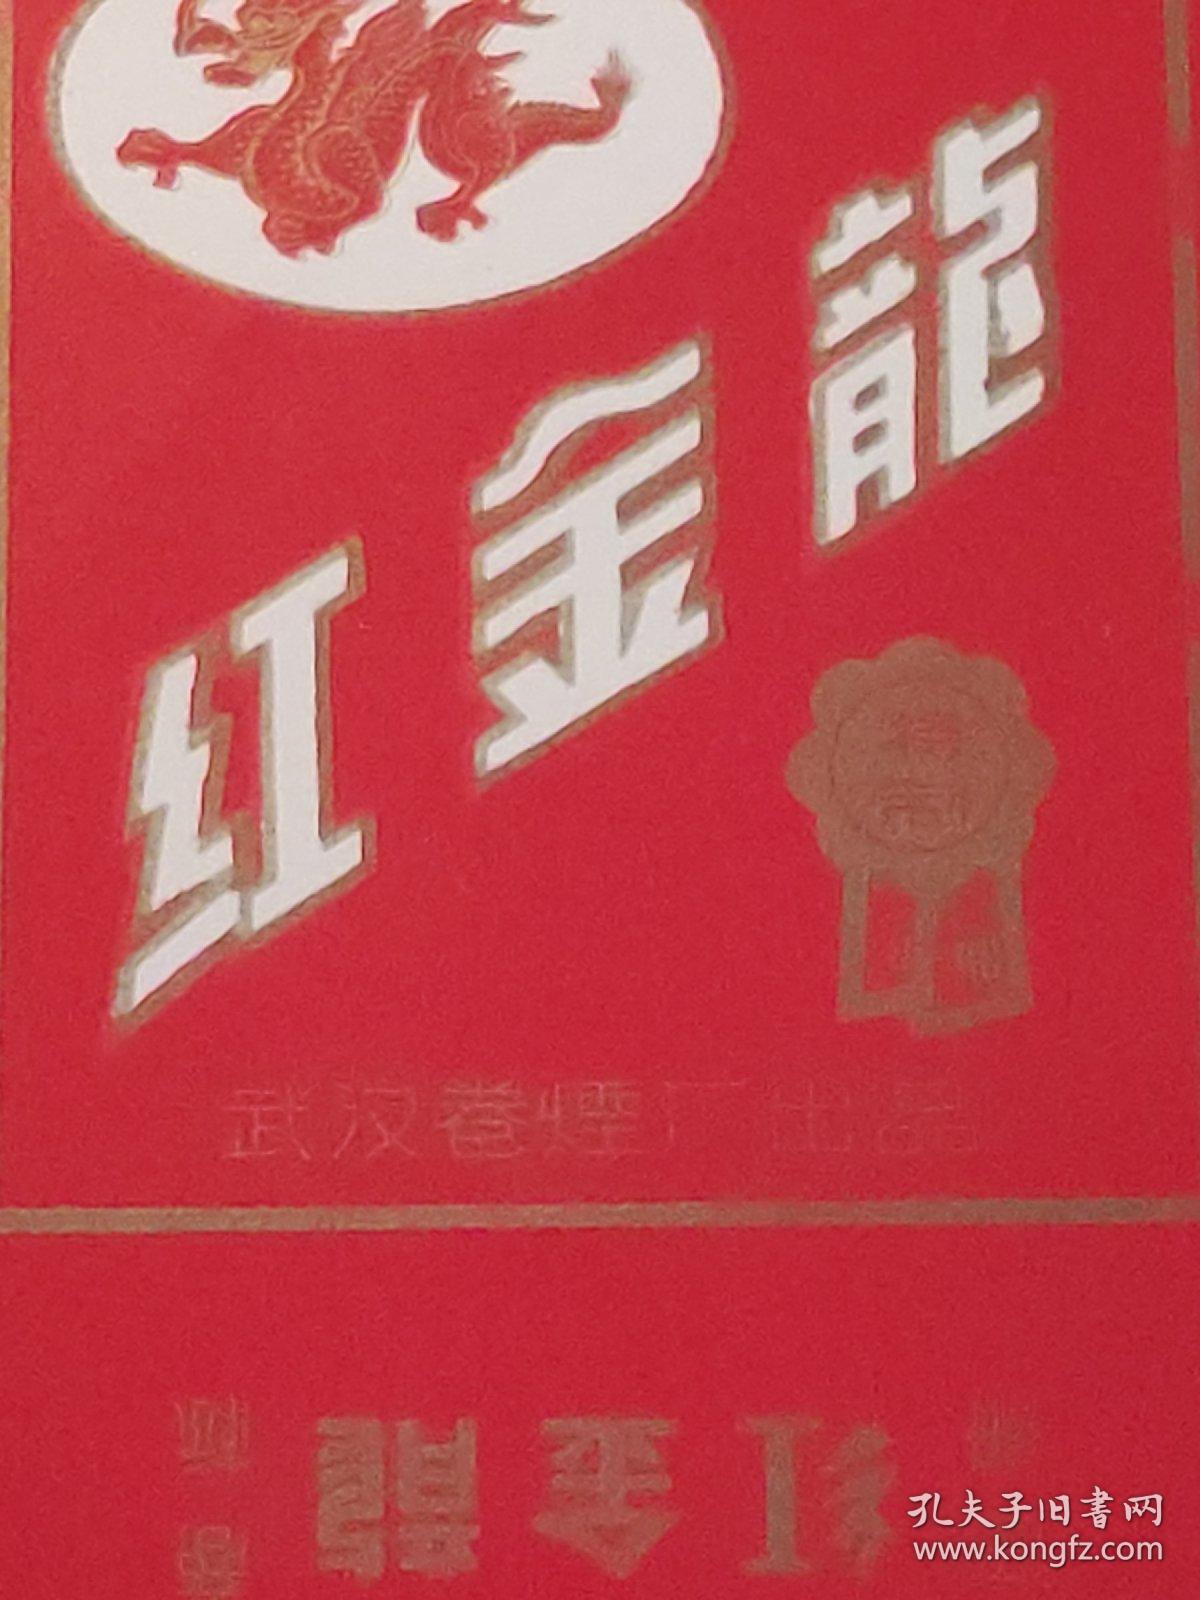 烟标：红金龙  香烟  武汉卷烟厂出品  竖版 样标    共1张售    盒六018